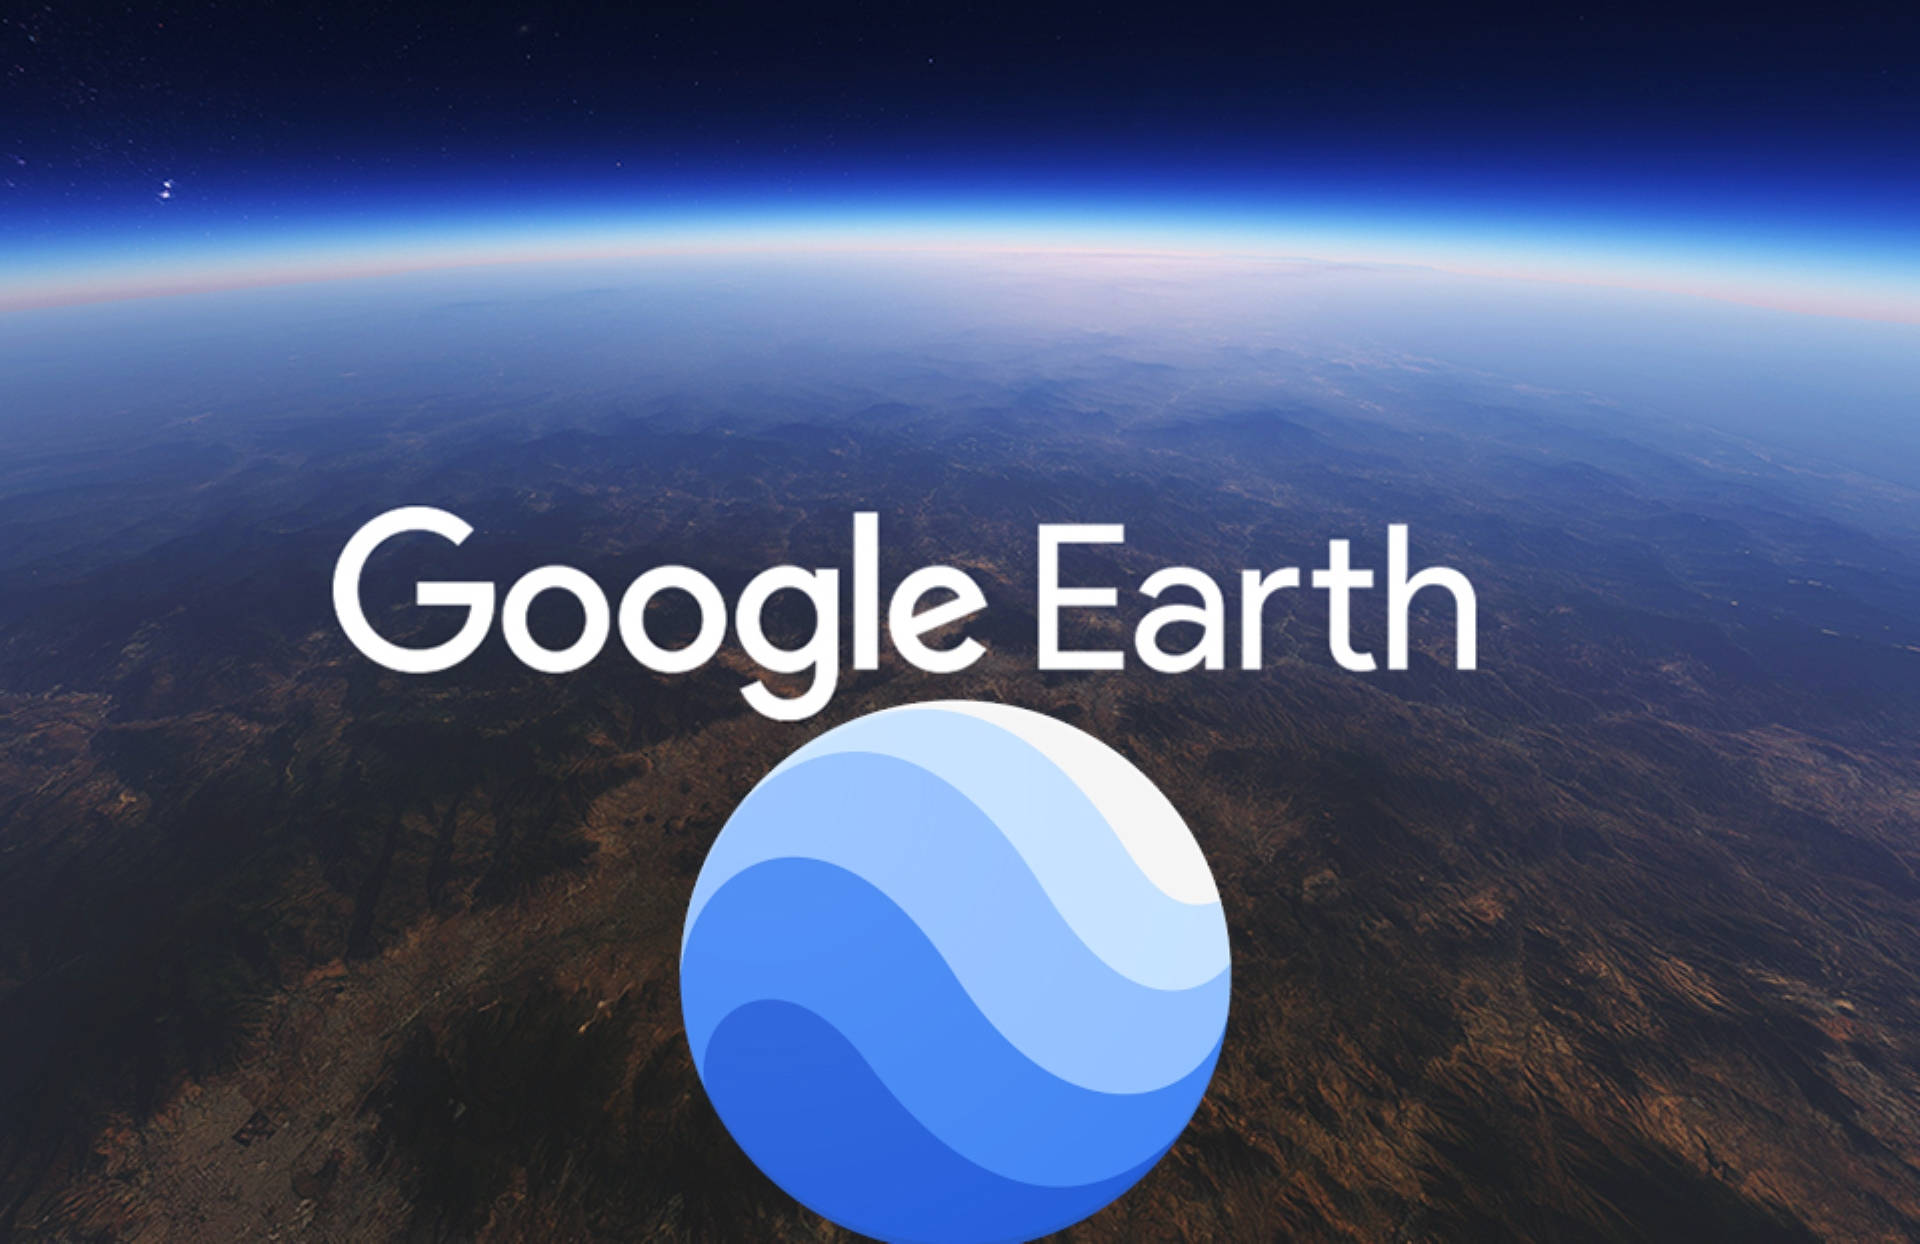 Plano De Fundo Do Google Earth